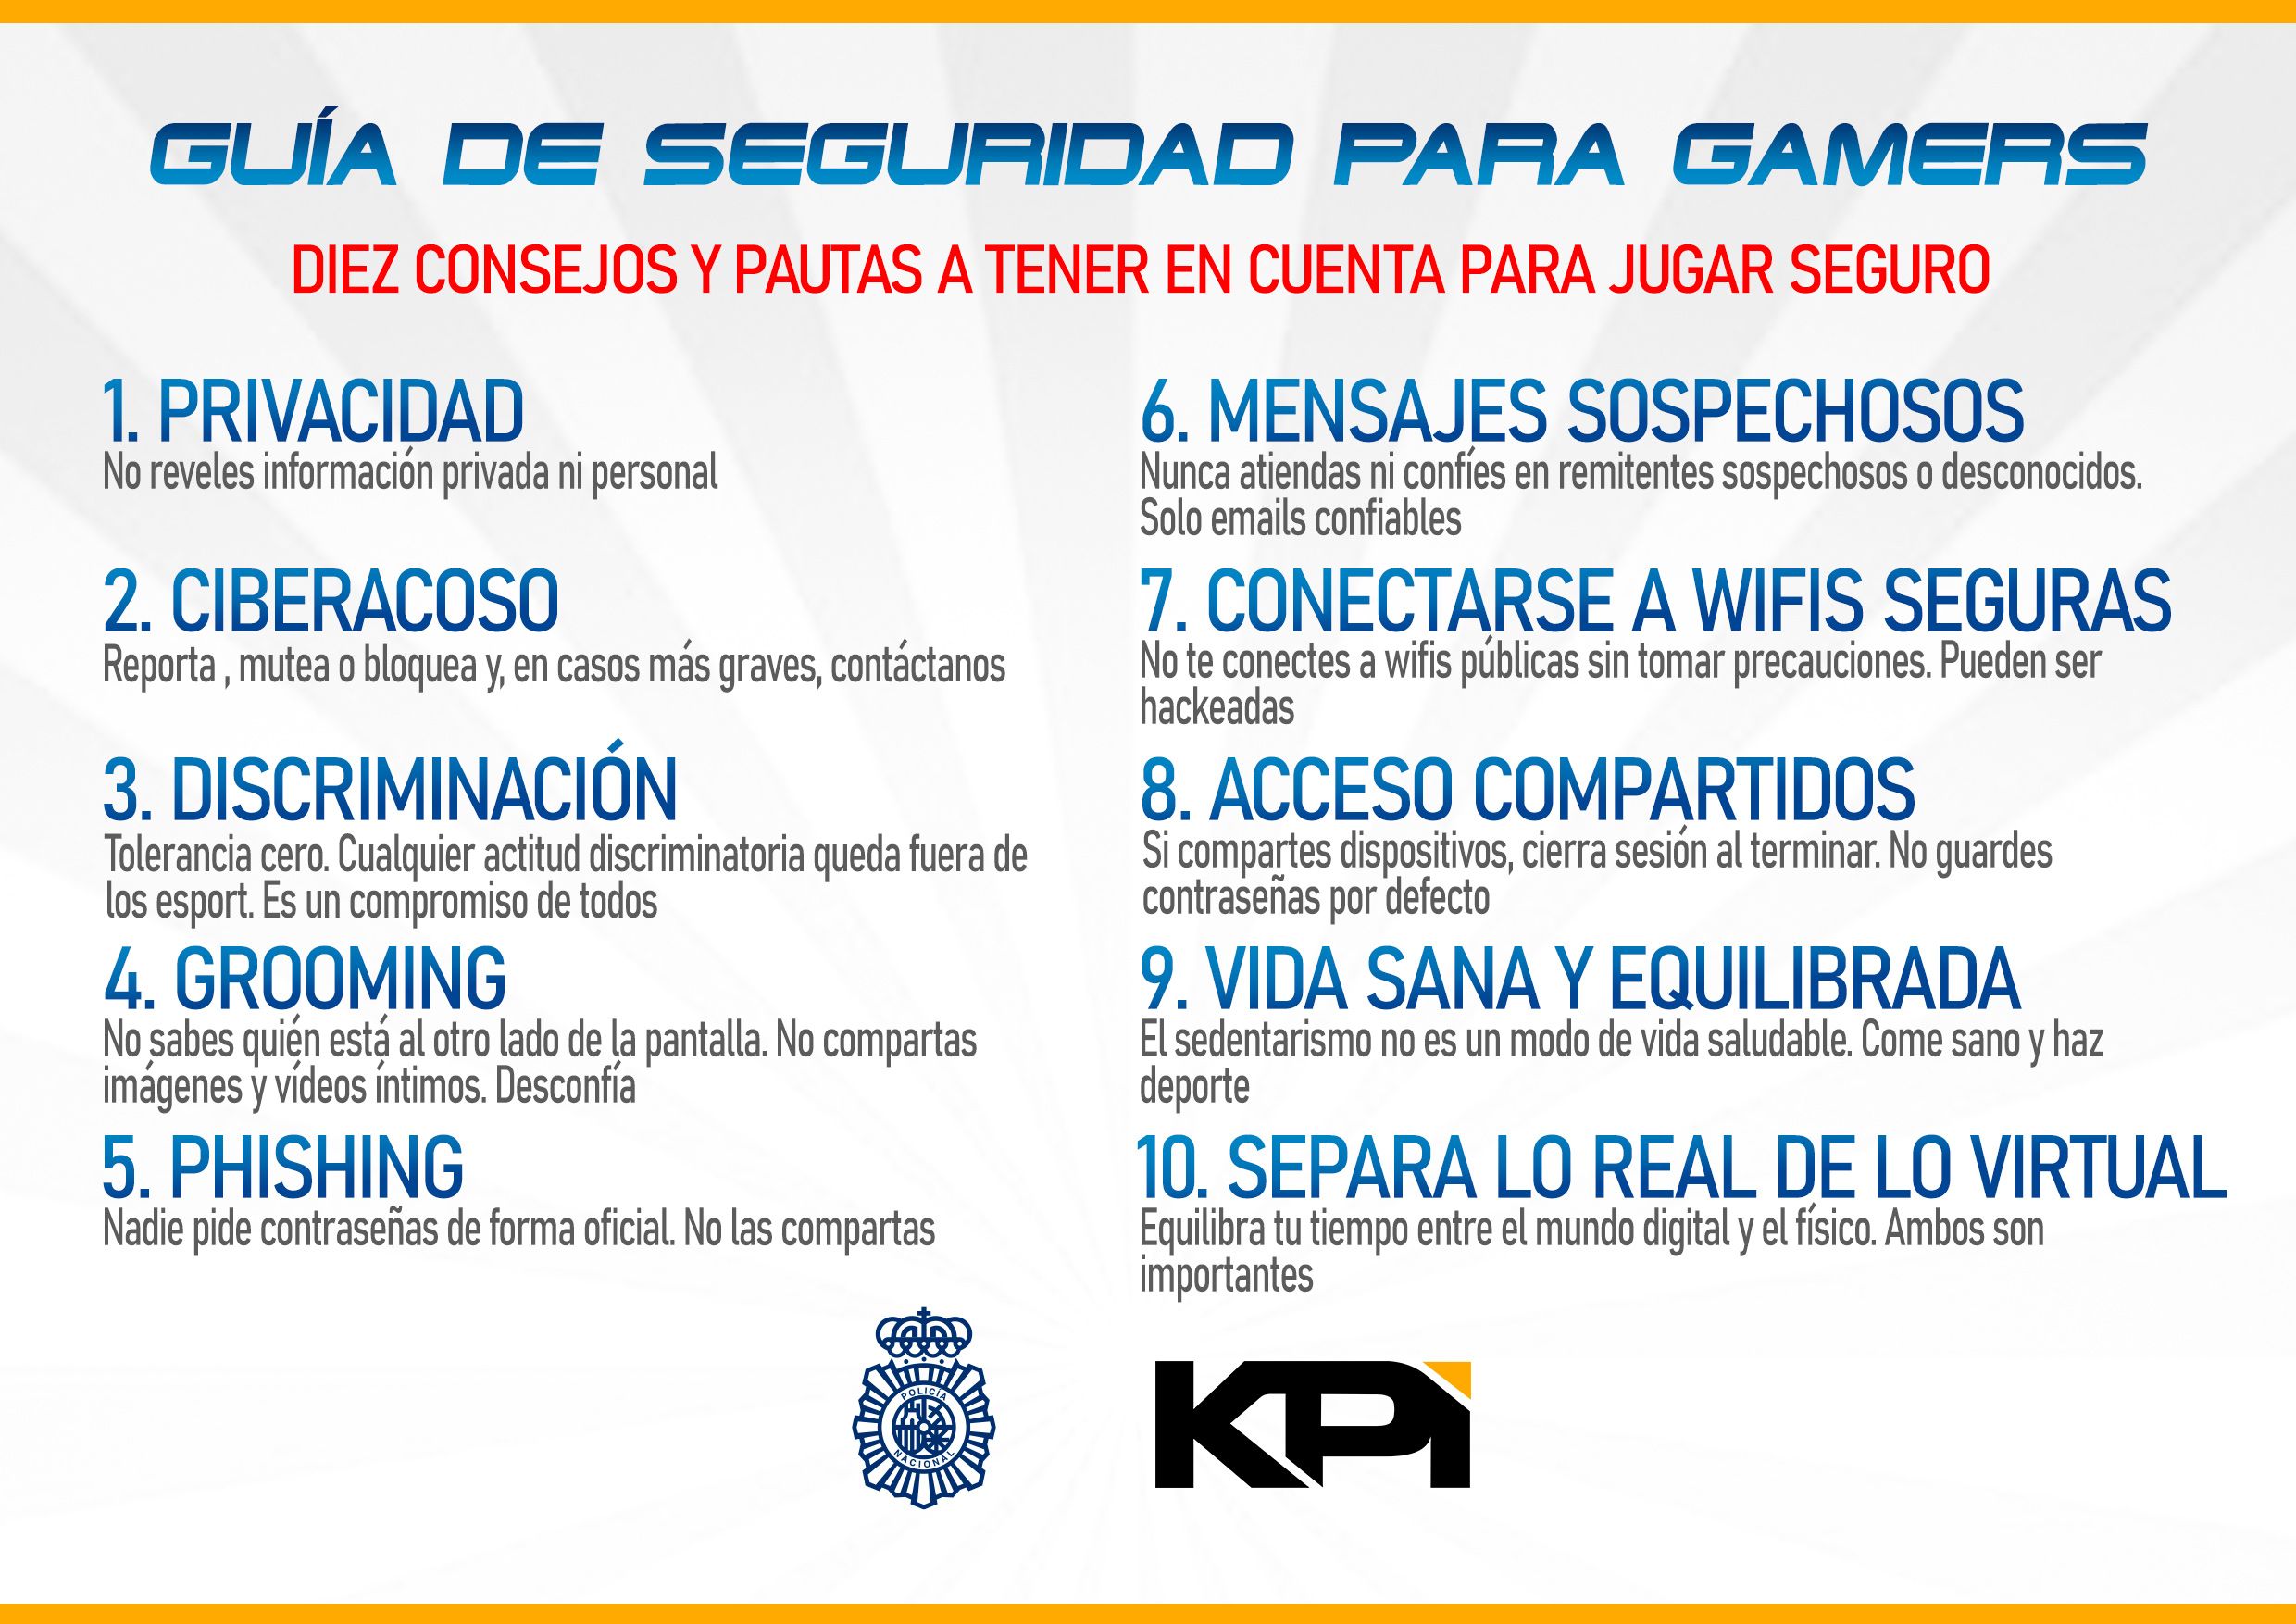 Guía de seguridad para gamers de la Policía Nacional y KPI